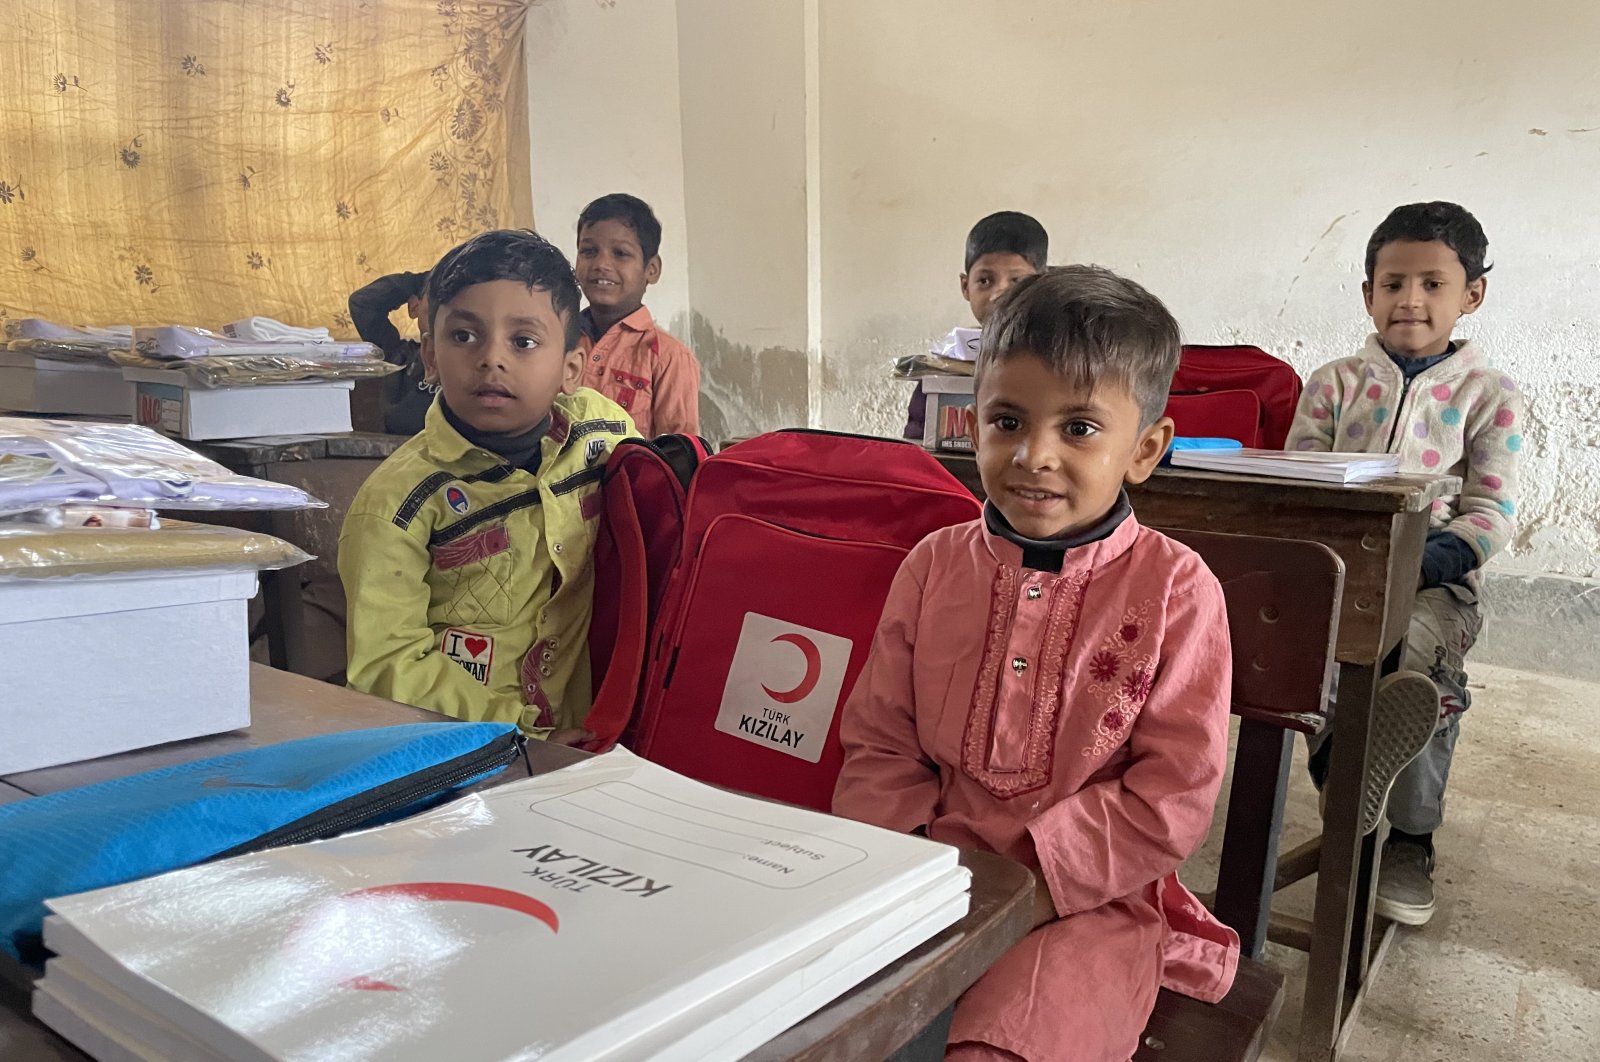 Bulan Sabit Merah Turki memberikan bantuan kepada pengungsi Rohingya di Pakistan